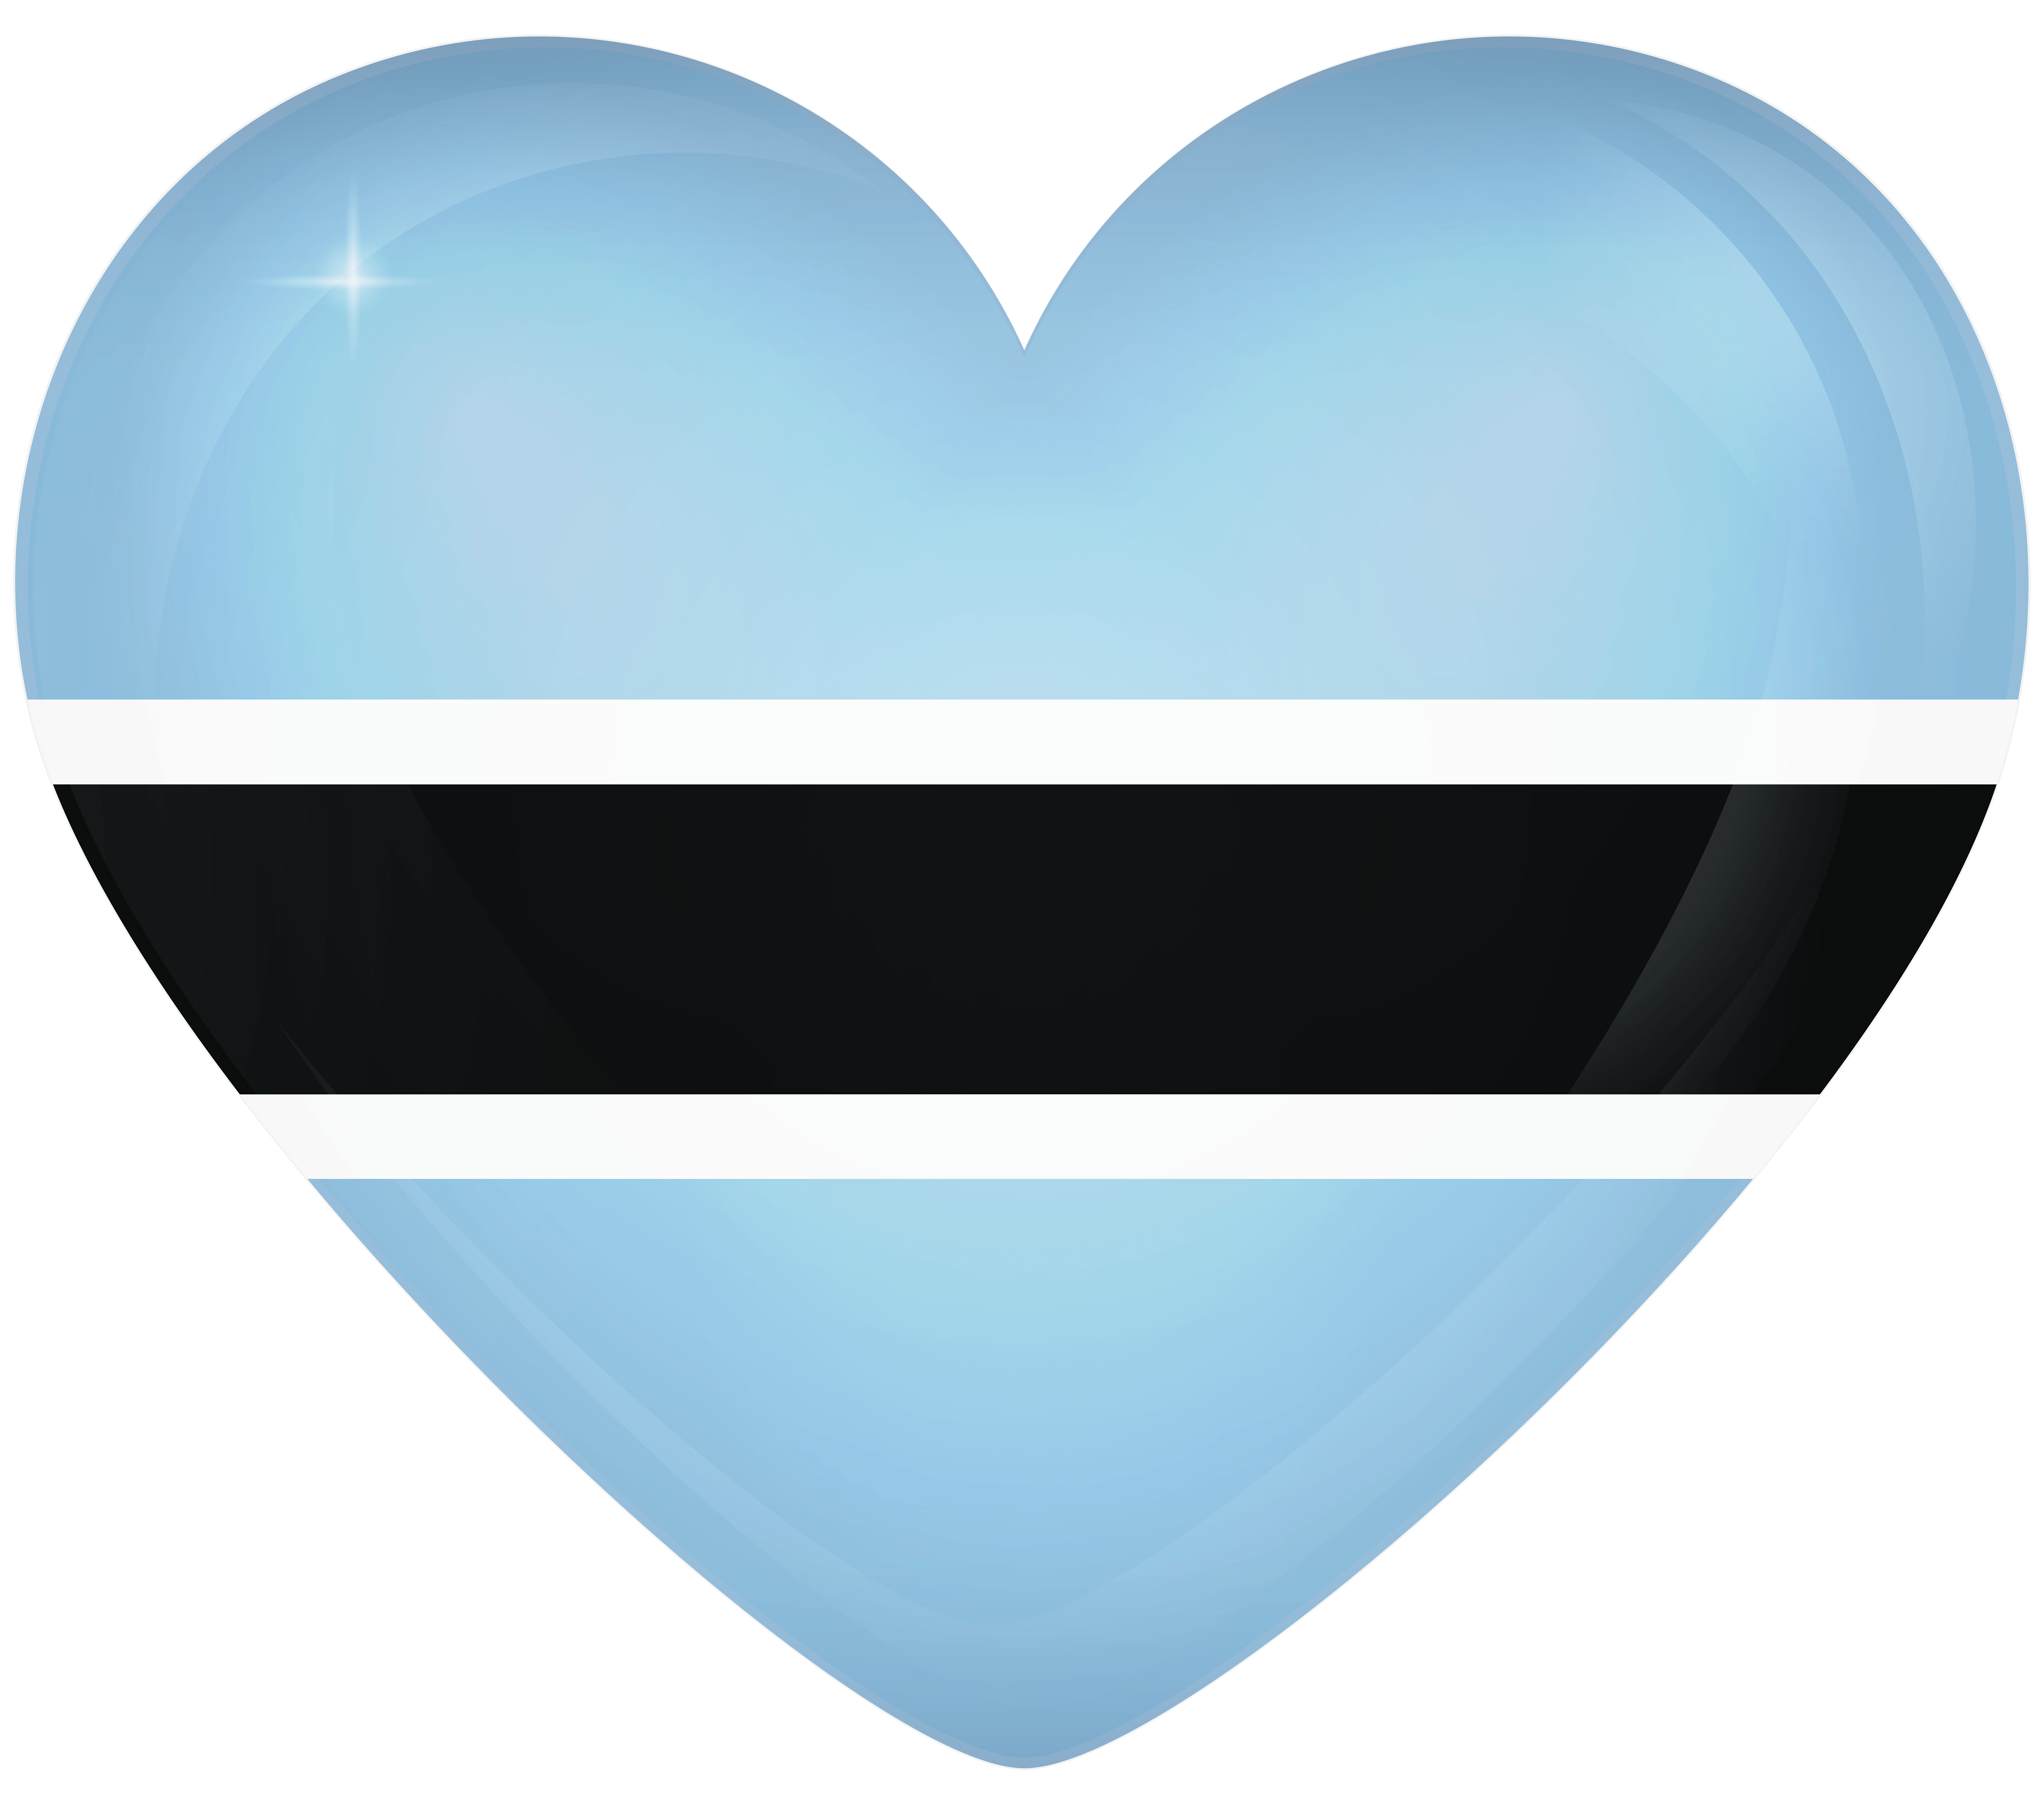 Botswana Large Heart Flag Quality